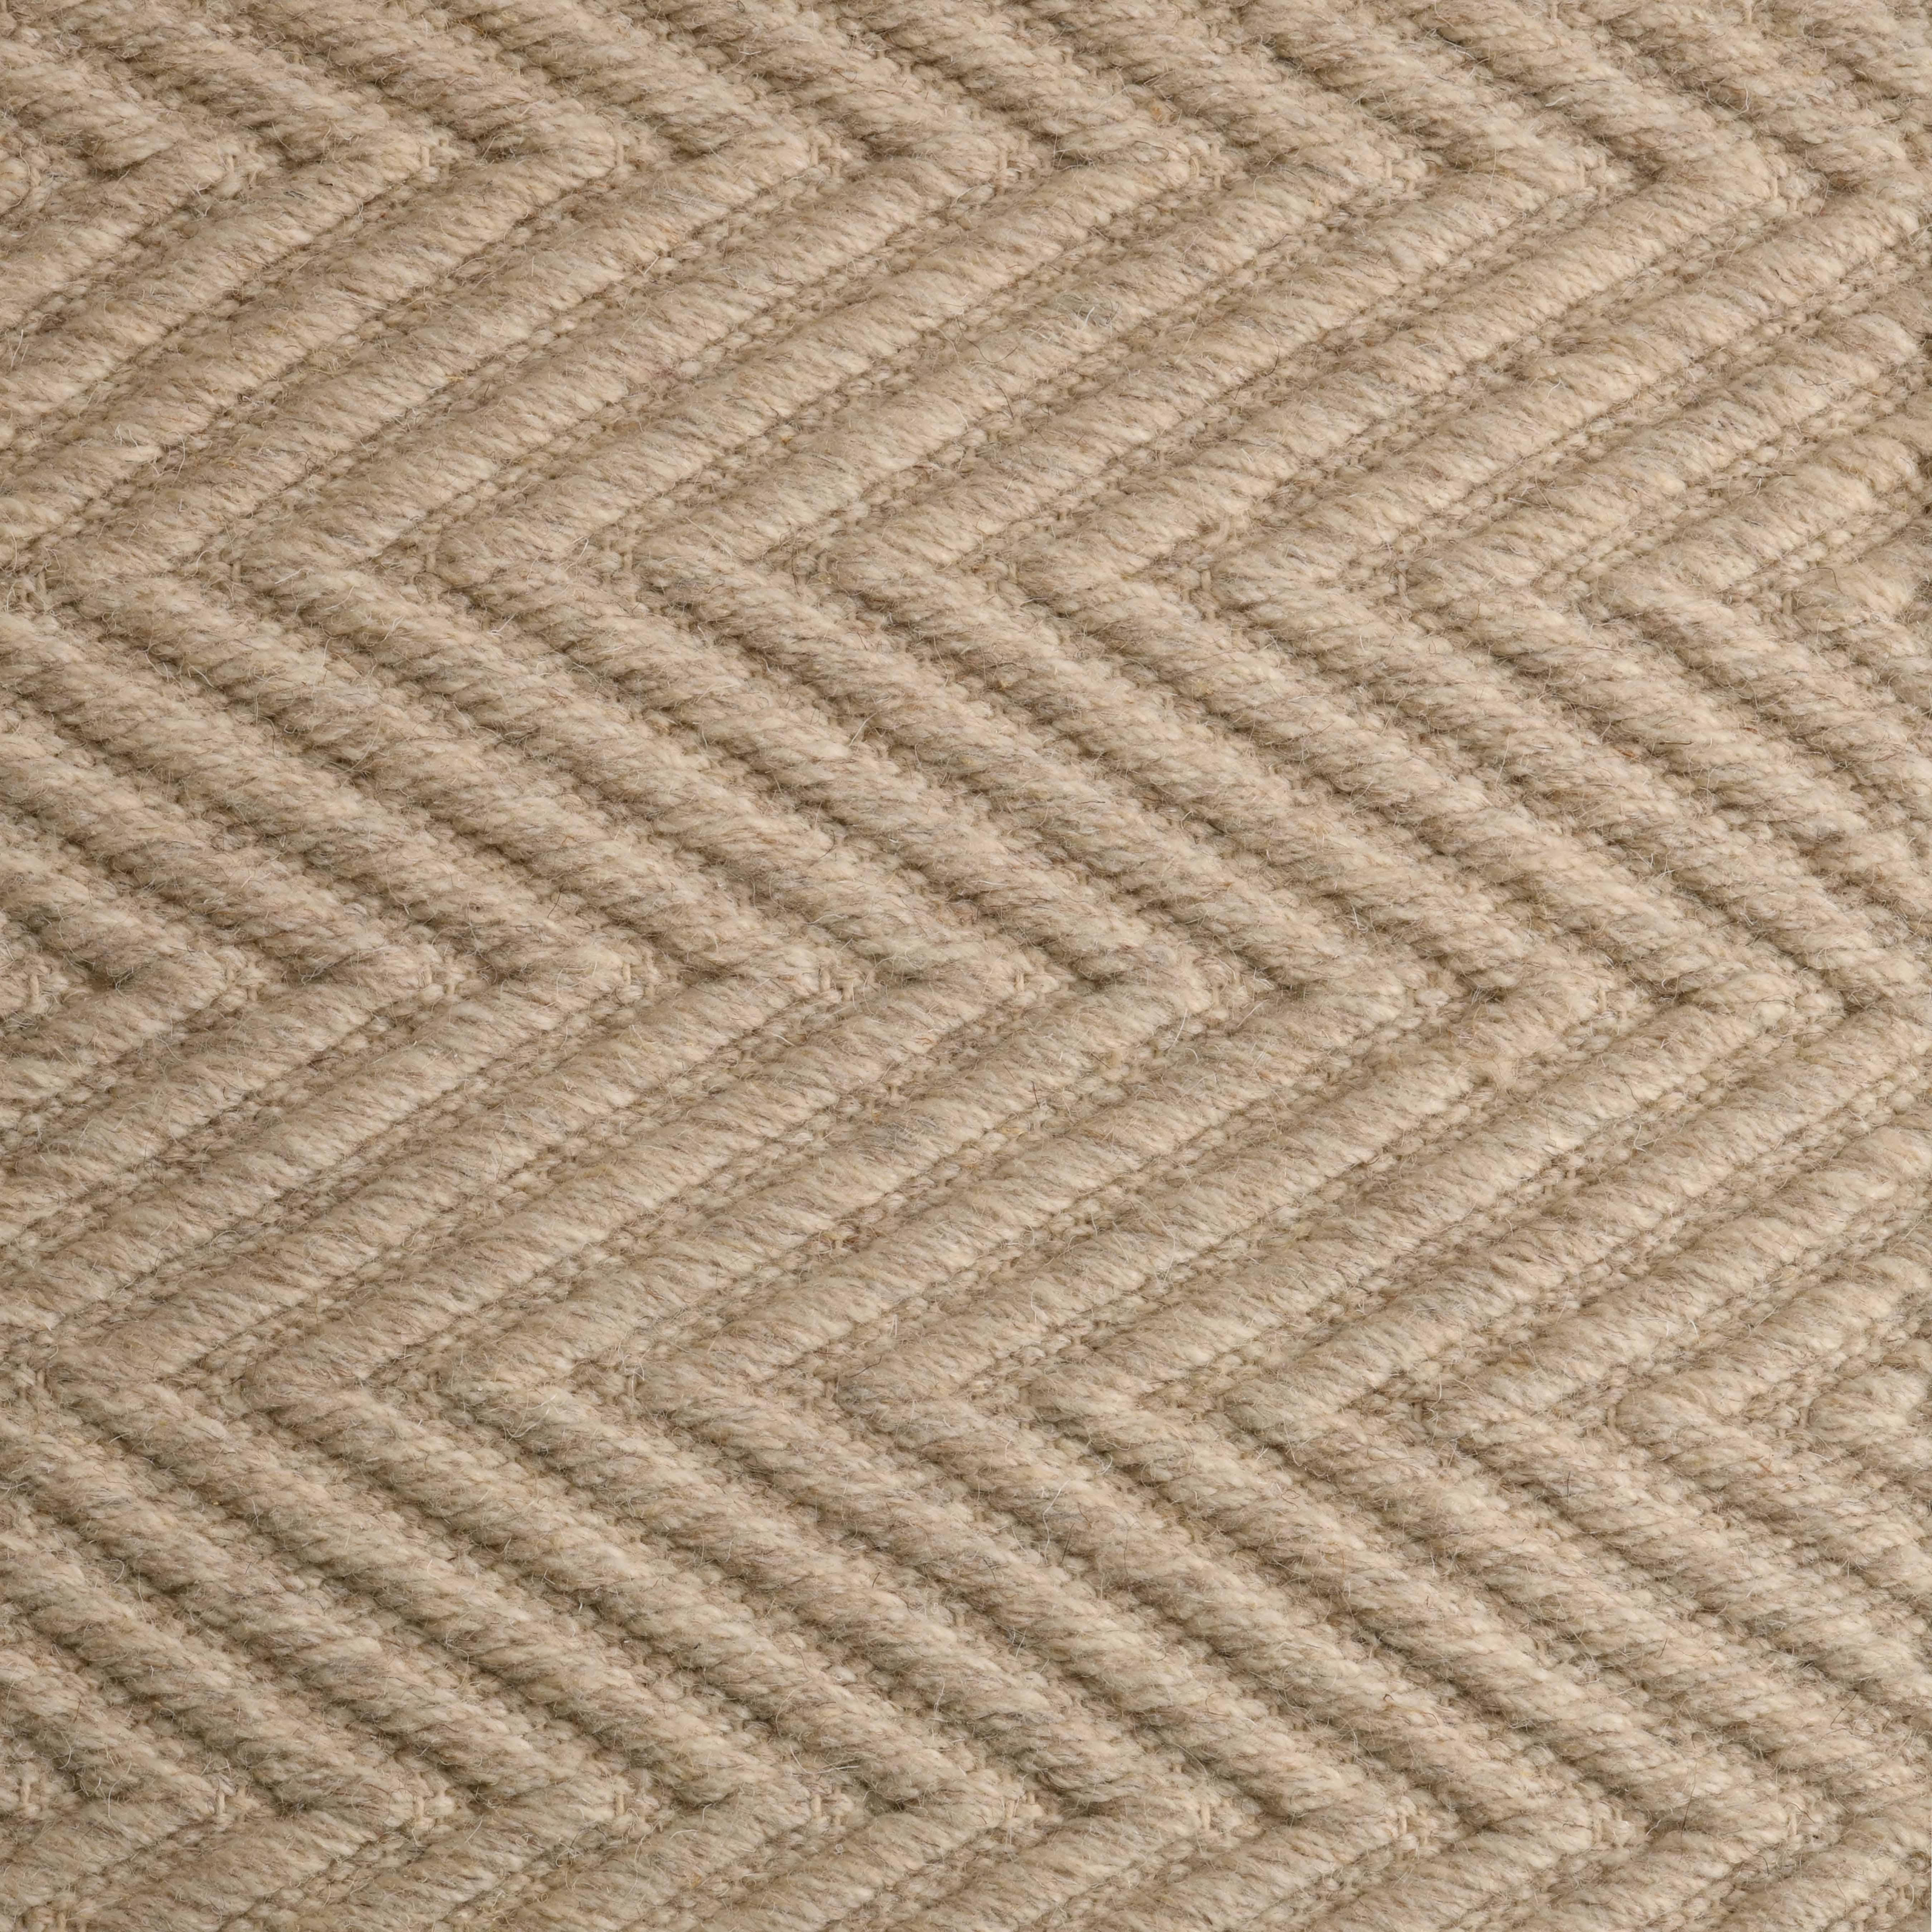 Lanx, Beige, Handwoven Face 60% Undyed NZ Wool, 40% Undyed MED Wool, 8' x 10'